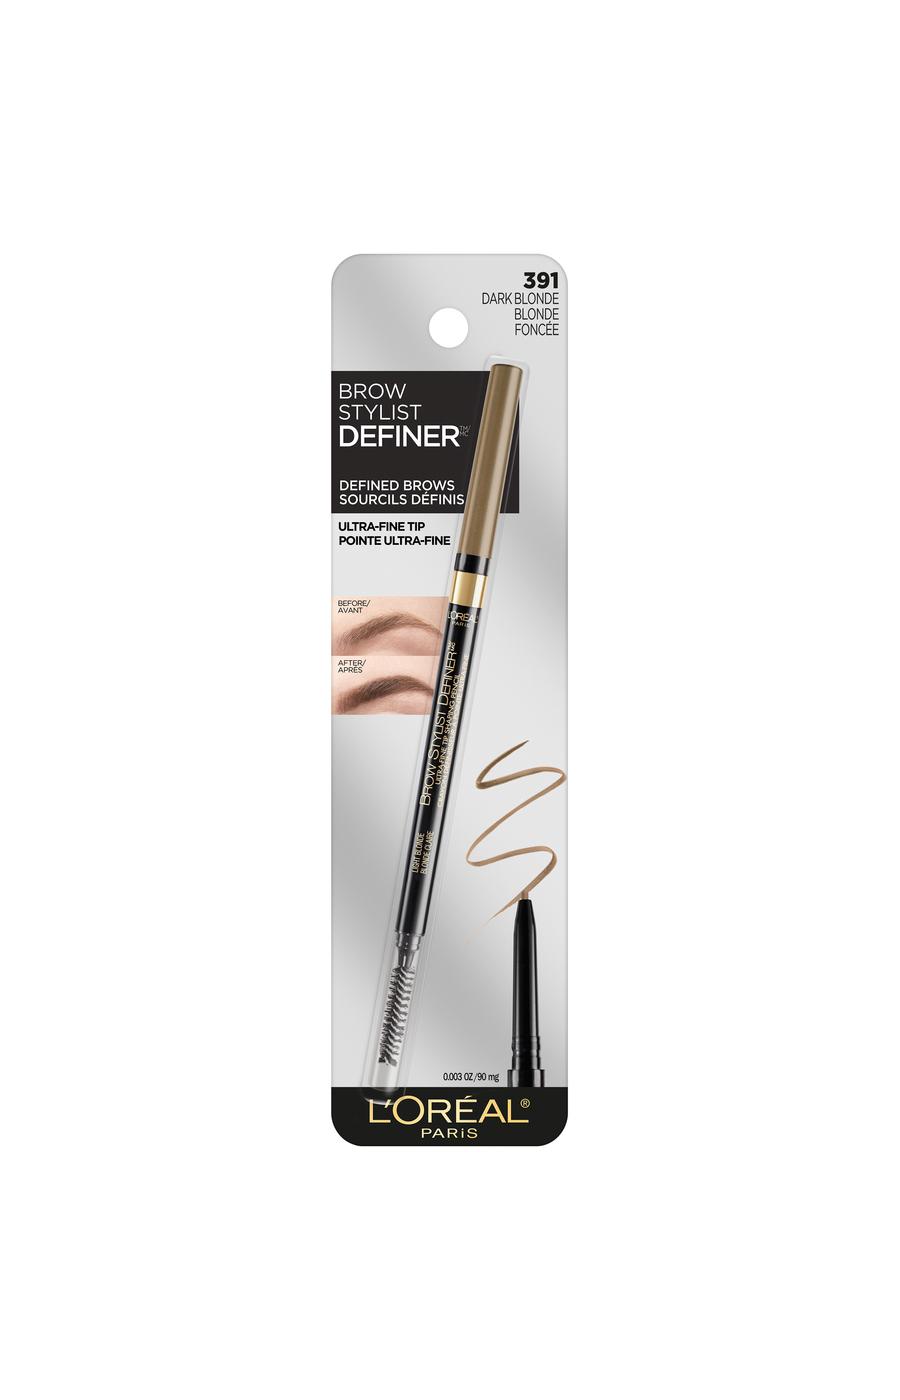 L'Oréal Paris Brow Stylist Definer Waterproof Eyebrow Mechanical Pencil Dark Blonde; image 1 of 5